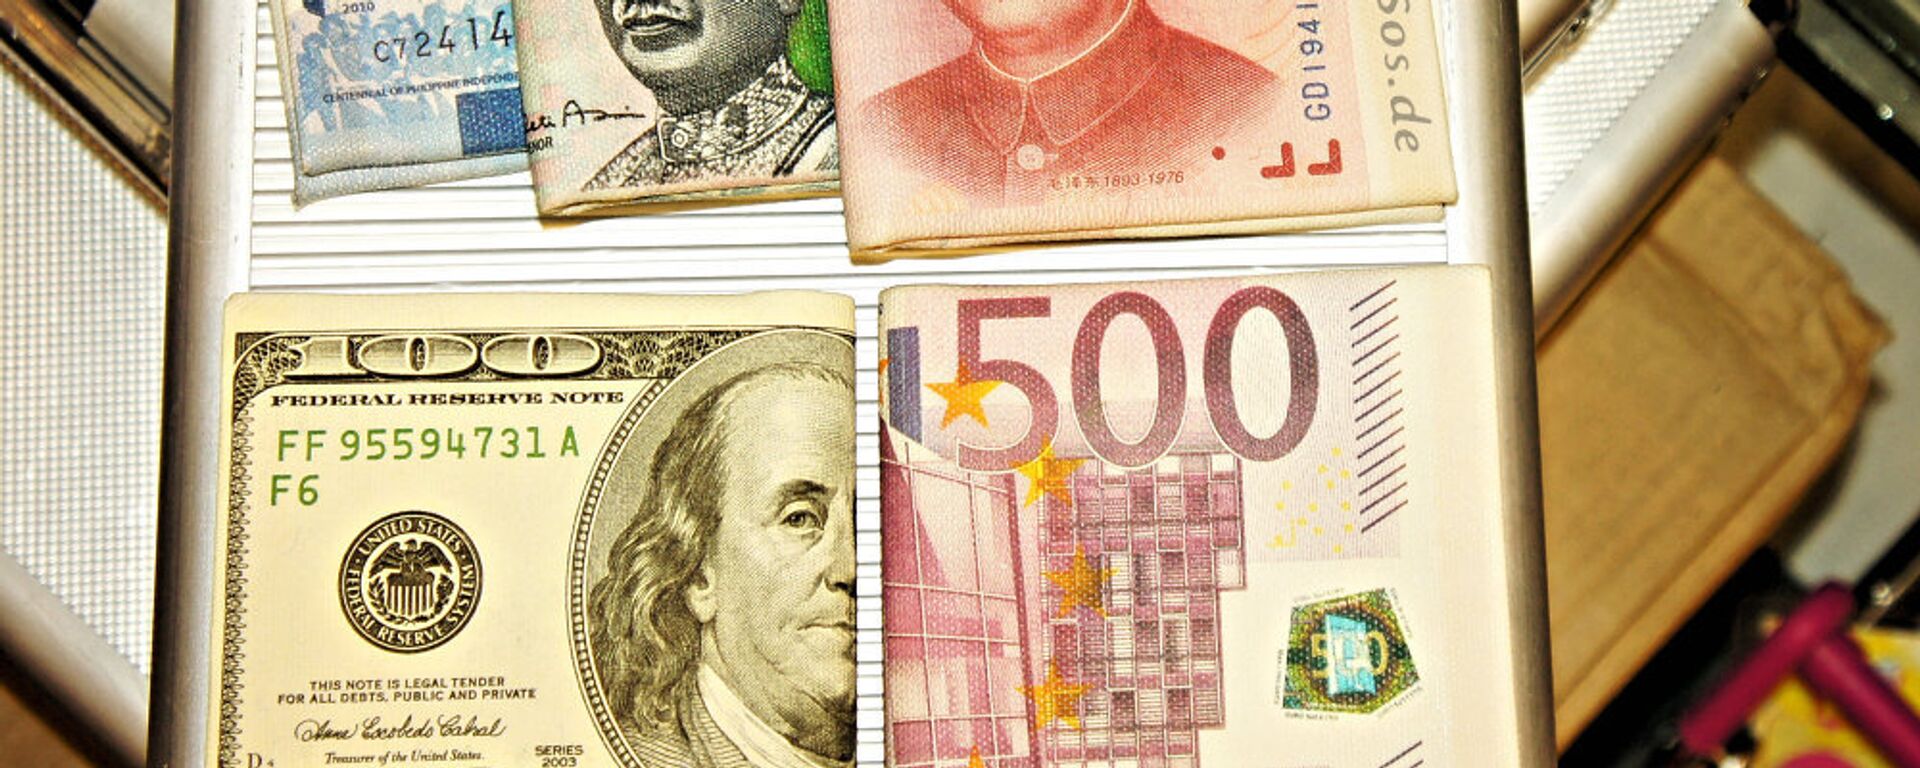 Кинески јуан, евро, амерички долар и друге валуте - Sputnik Србија, 1920, 08.05.2021